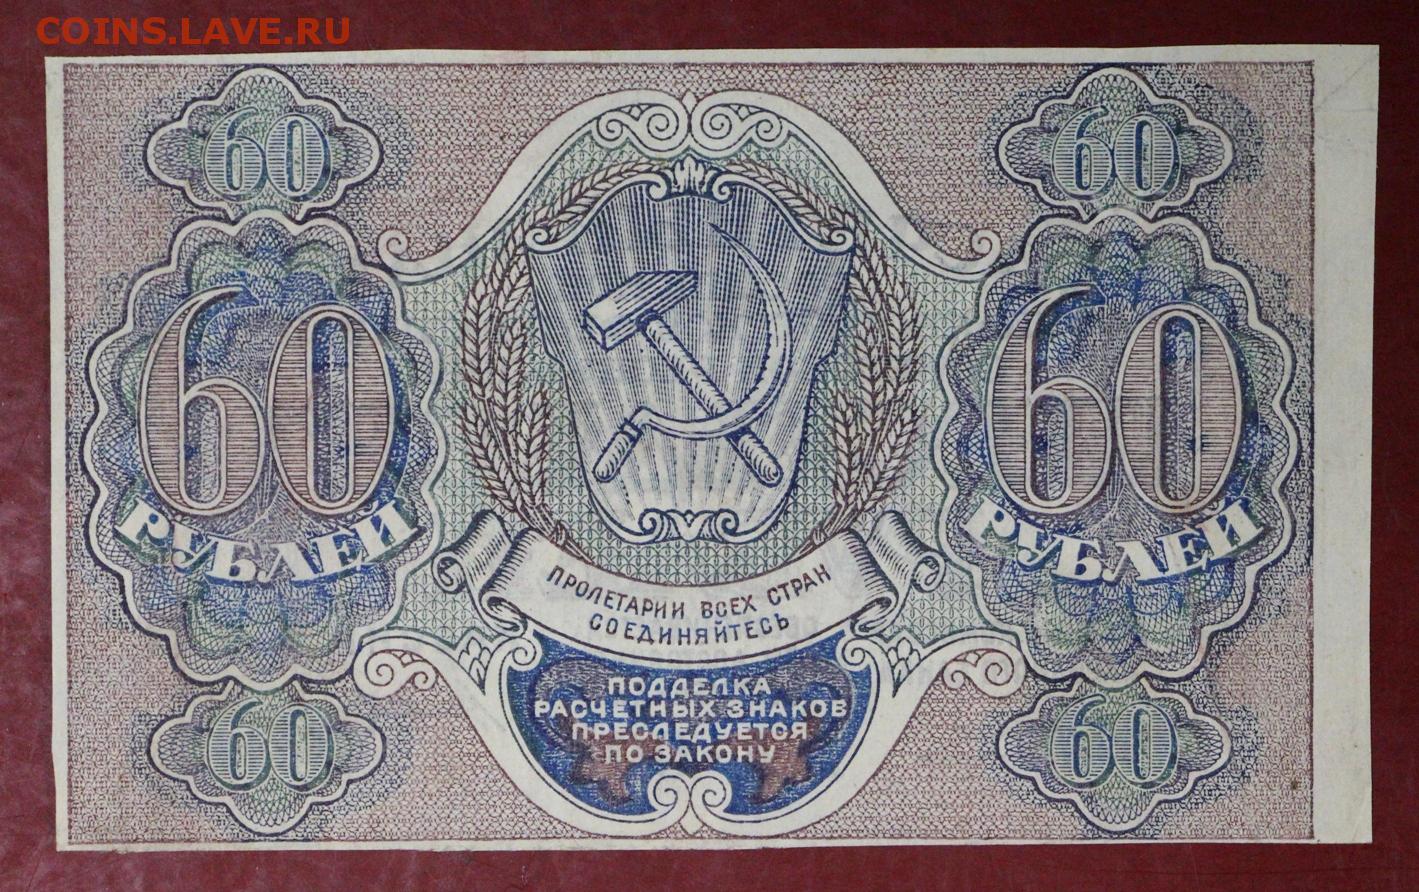 60 рублей метр. Расчётный знак 60 рублей 1919 года. 60 Рублей фотографий. 60 Рублей 1919 лист. 60 Рублей картинка.